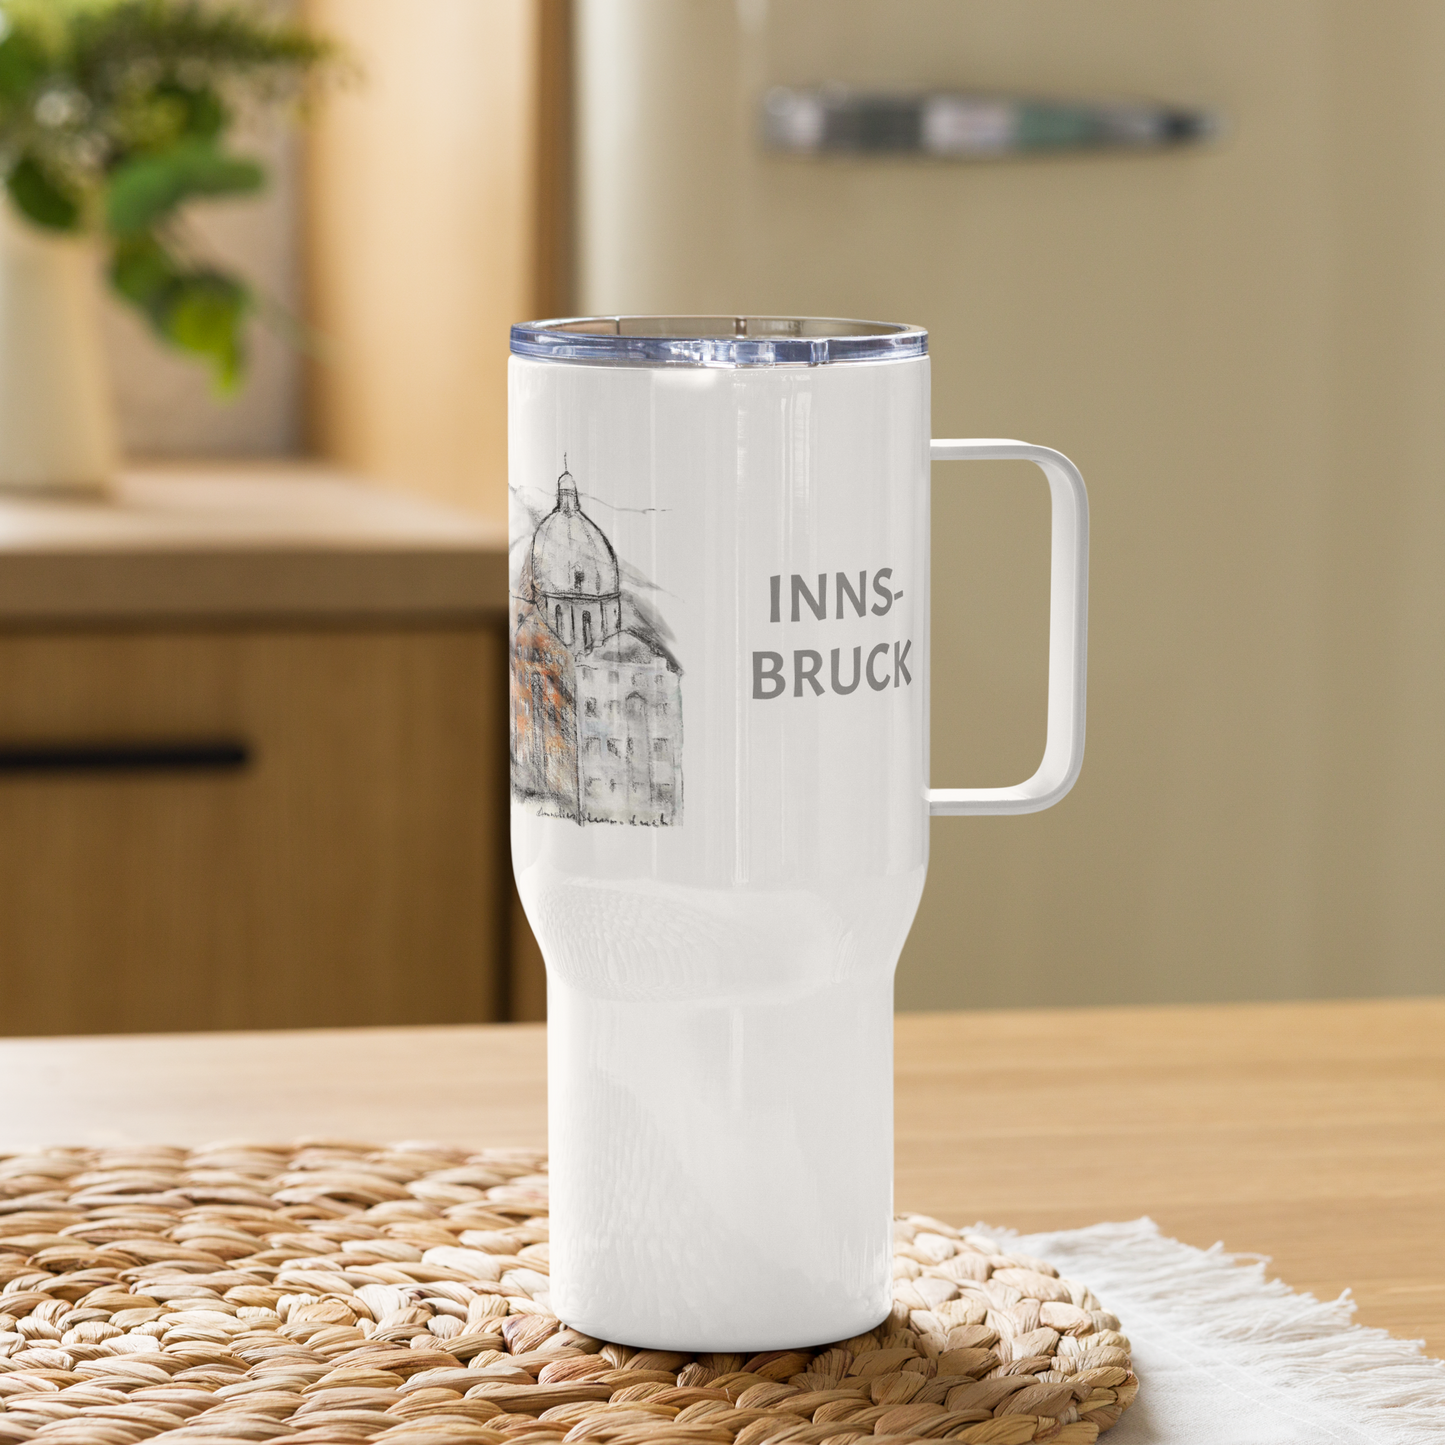 Reisebecher Innsbruck: Historische Schönheit im Griff